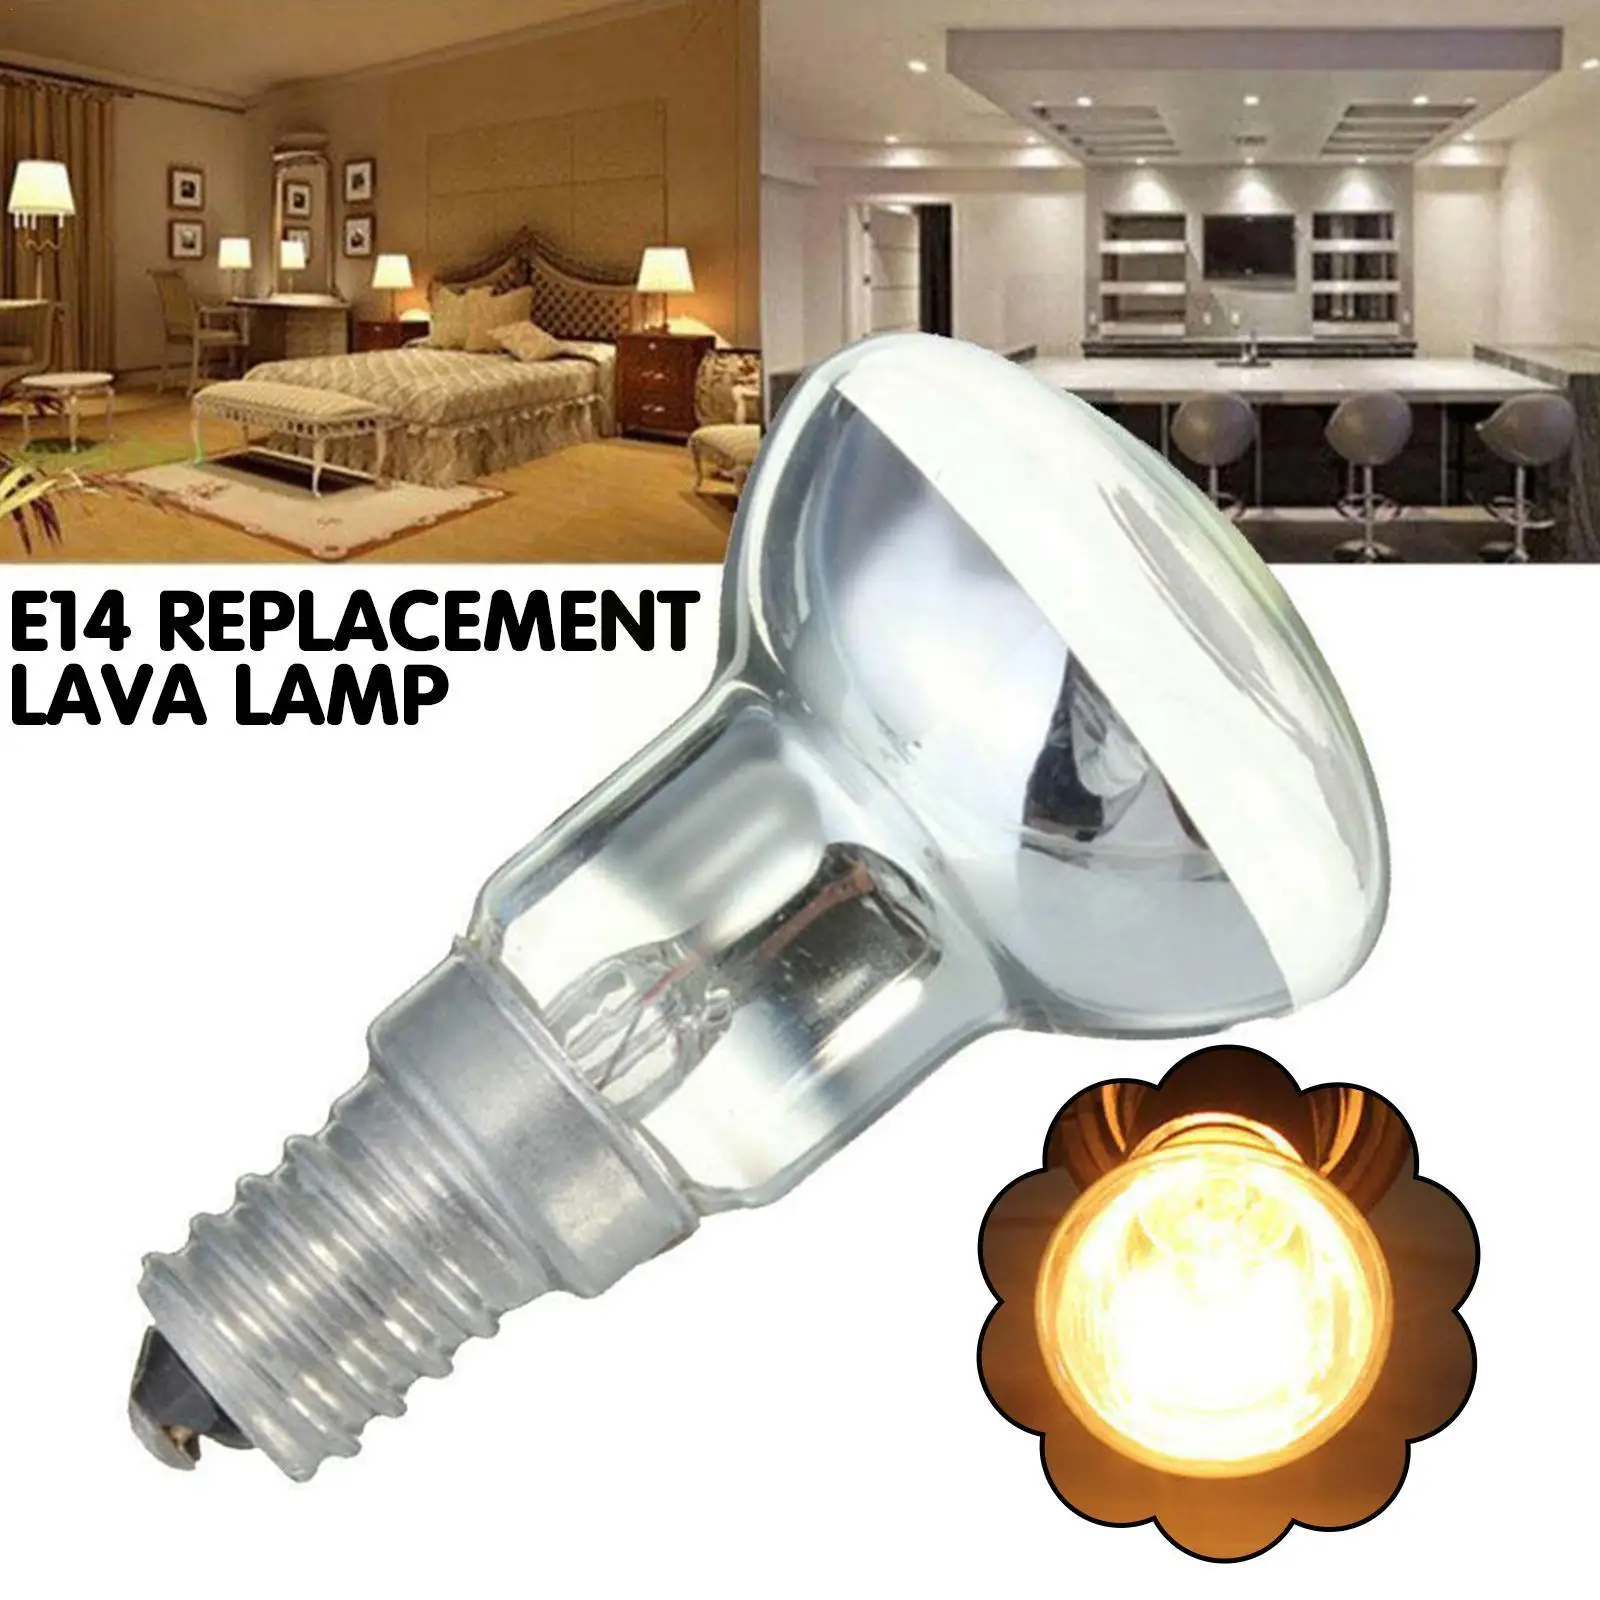 

E14 Replacement Lava Lamp R39 30W 240V Spotlight Screw Incandescent Bulb Home Lamp Edison Decor In Light Bulb Filament B0N1